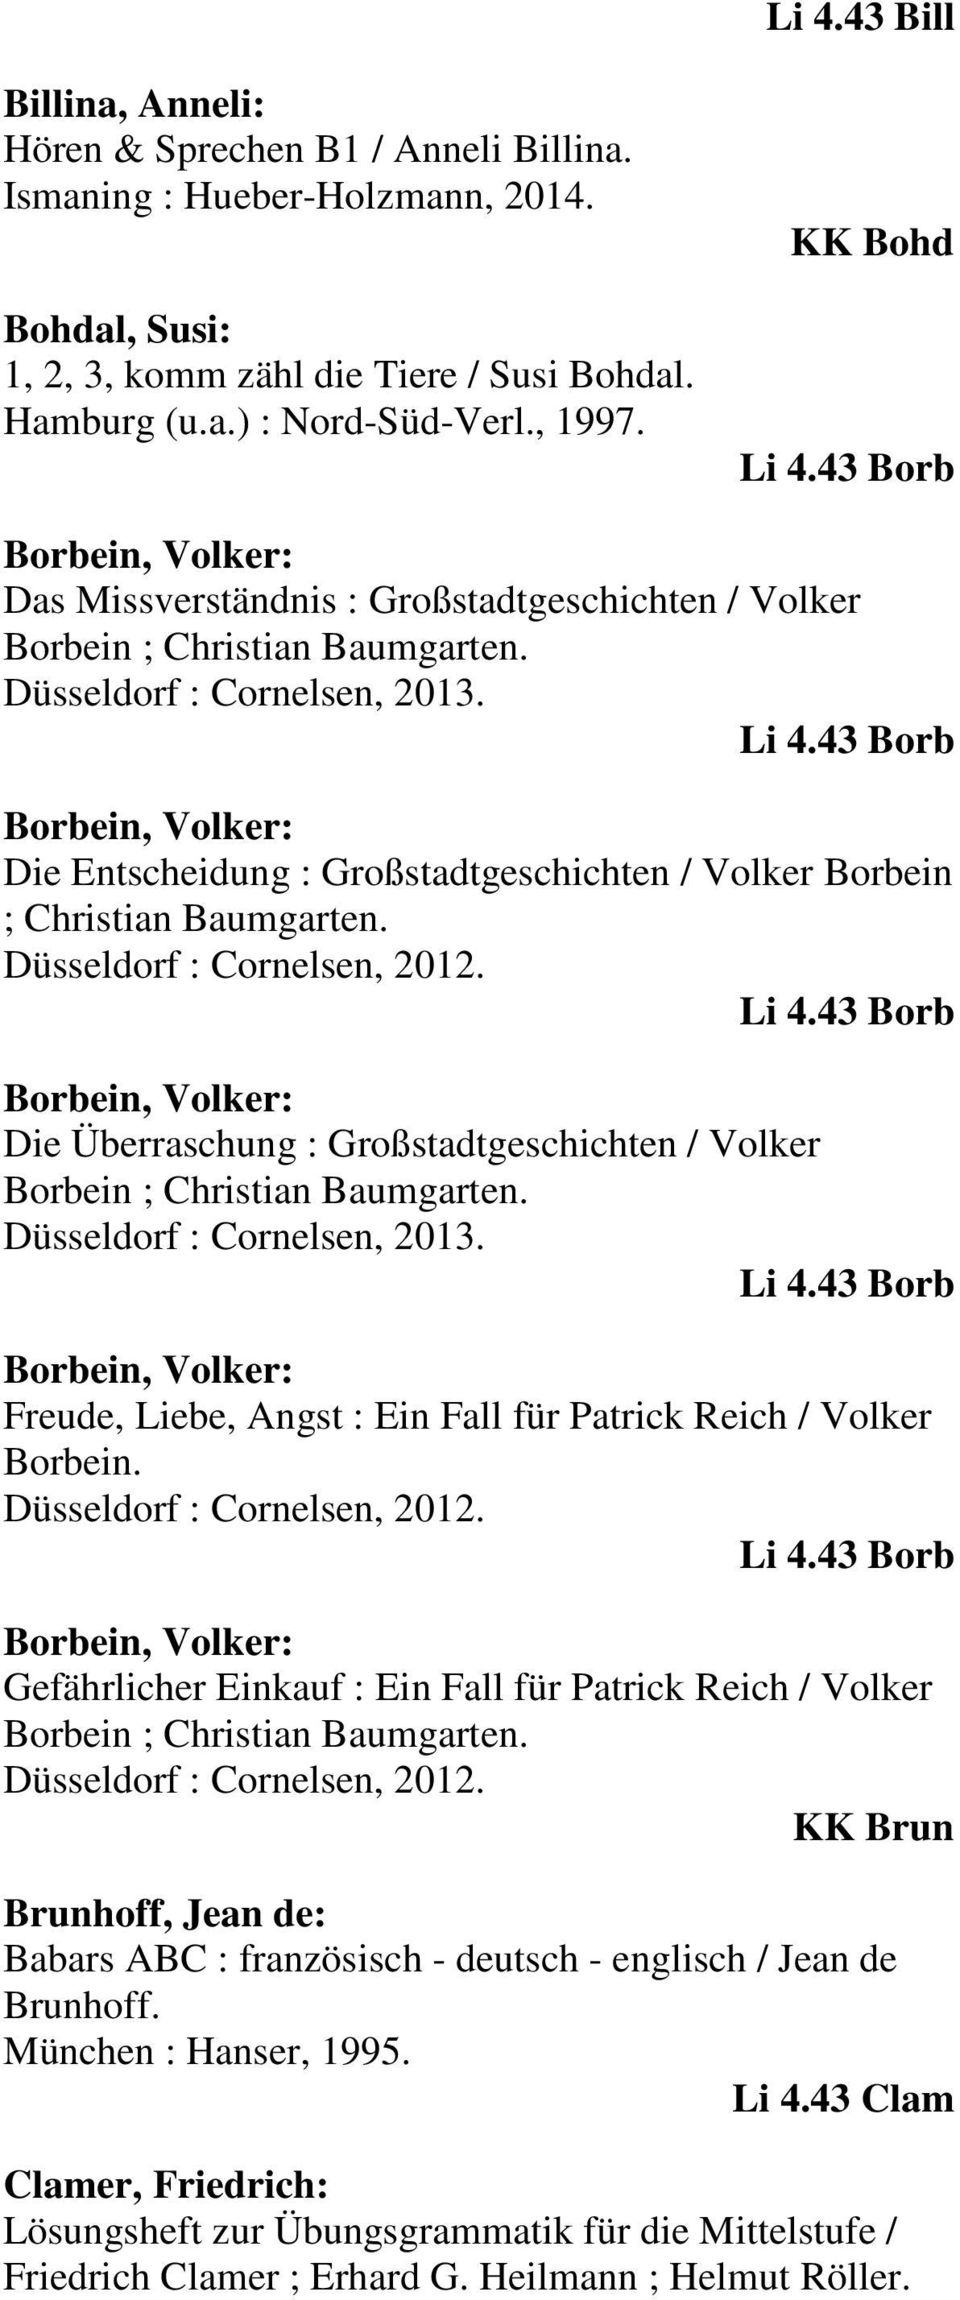 43 Borb Borbein, Volker: Die Entscheidung : Großstadtgeschichten / Volker Borbein ; Christian Baumgarten. Düsseldorf : Cornelsen, 2012. Li 4.